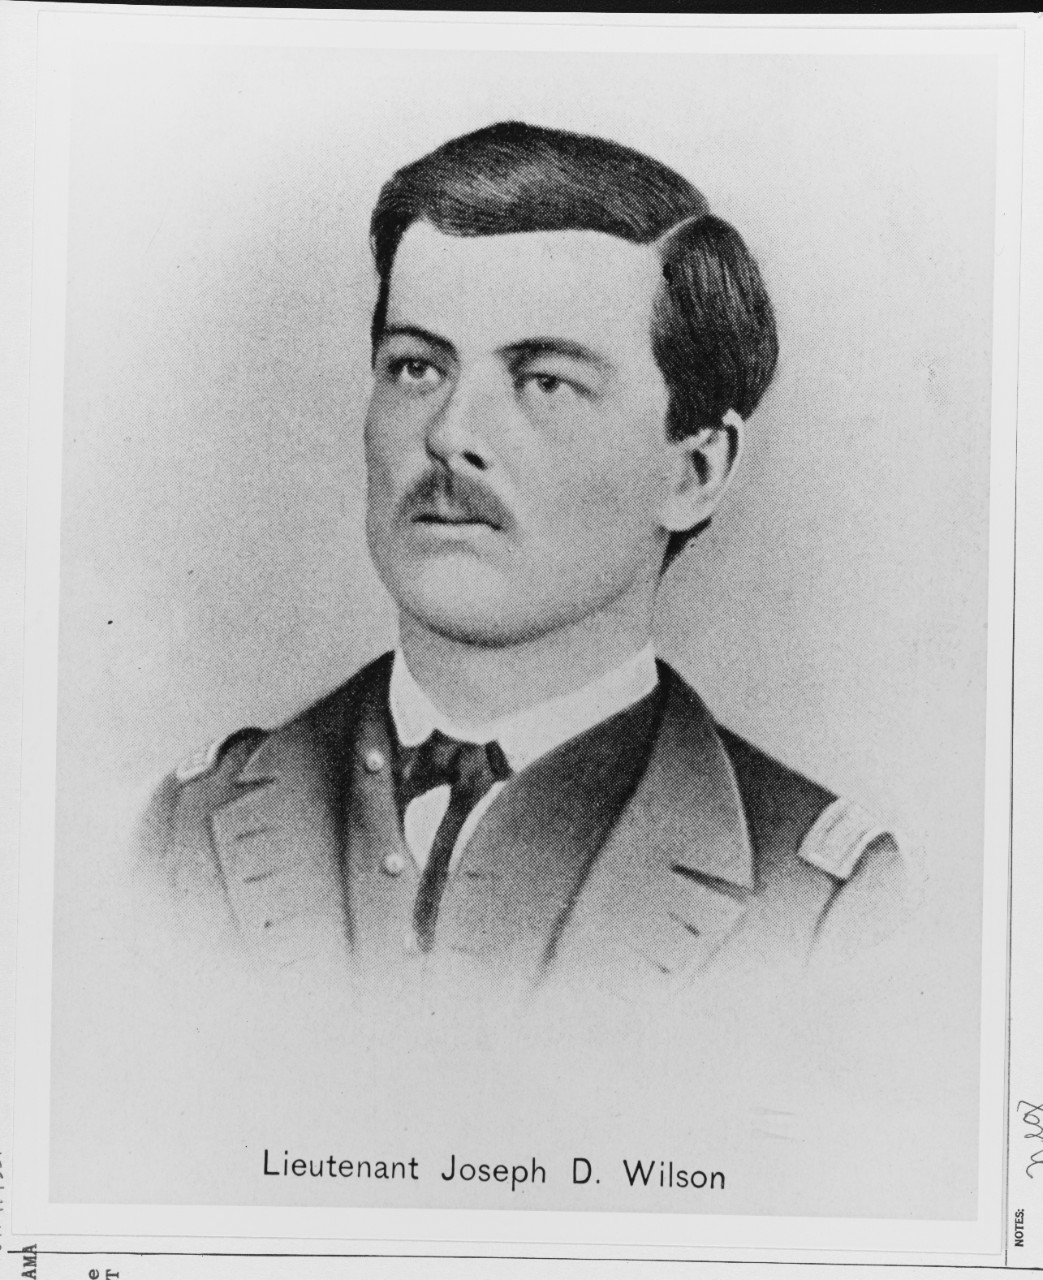 Lt. Joseph D. Wilson, CSS ALABAMA